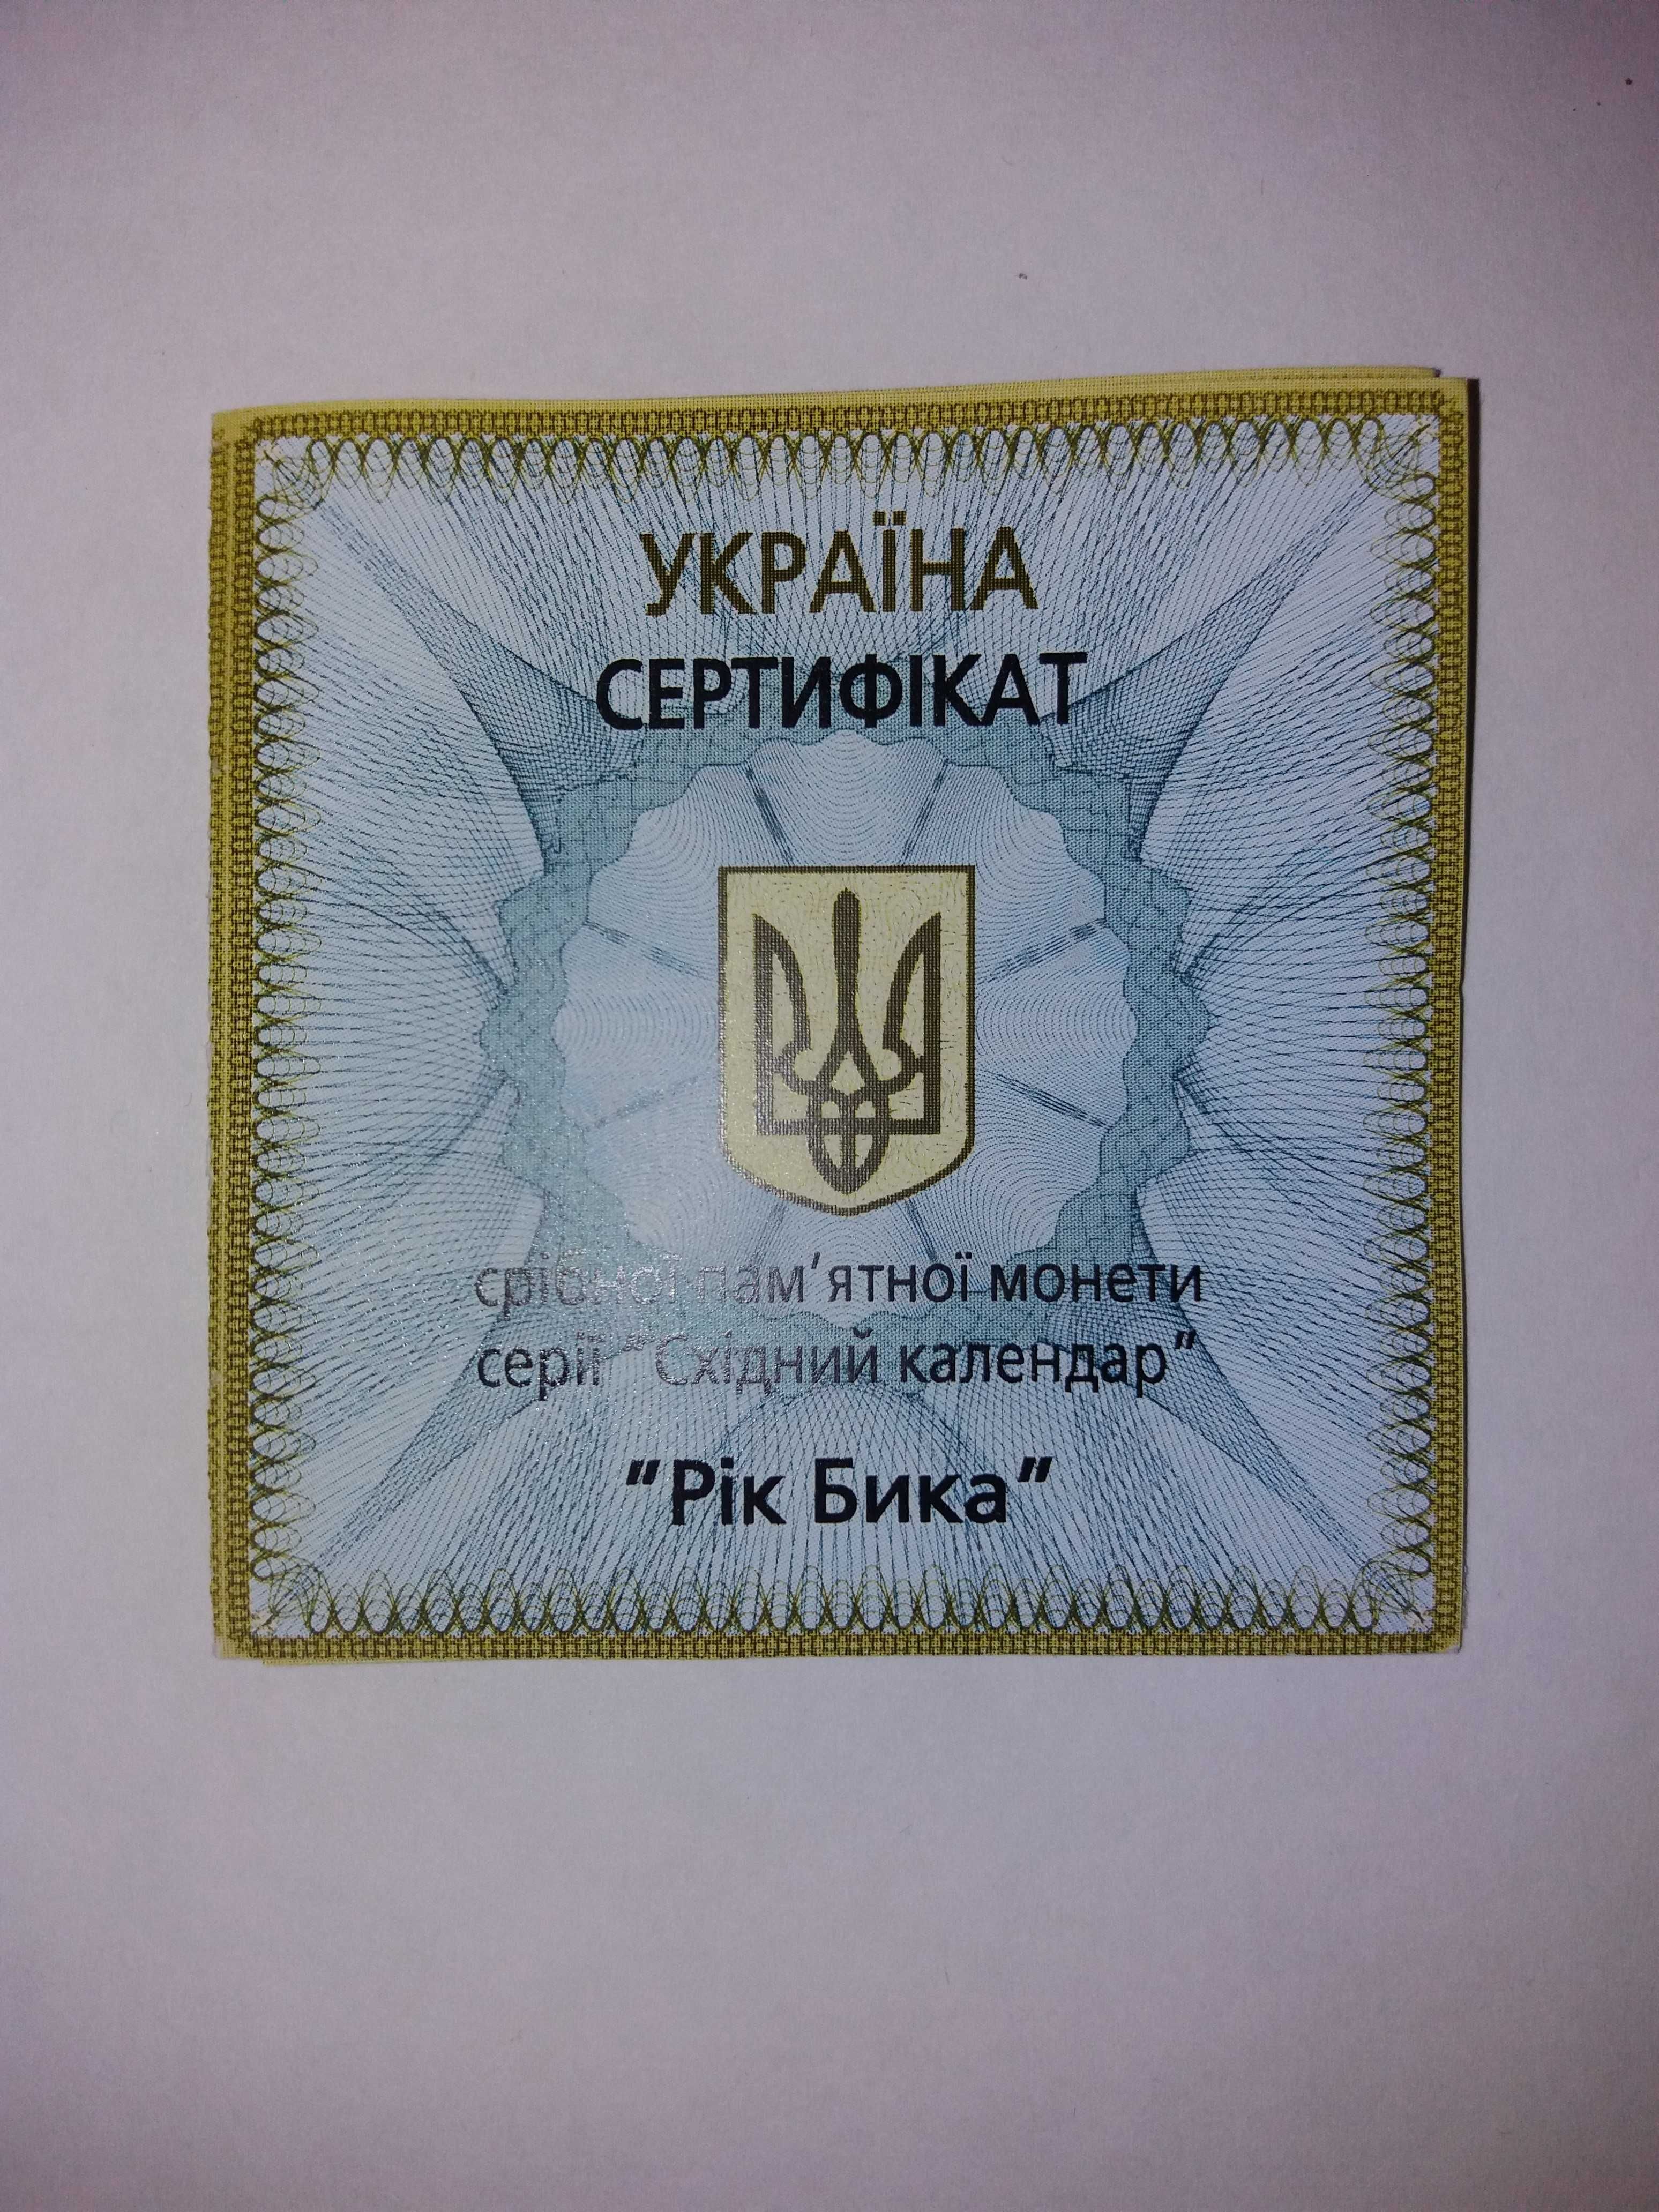 Продам серебряную монету Украины "Год быка"  ( 5 гривен 2009г.)